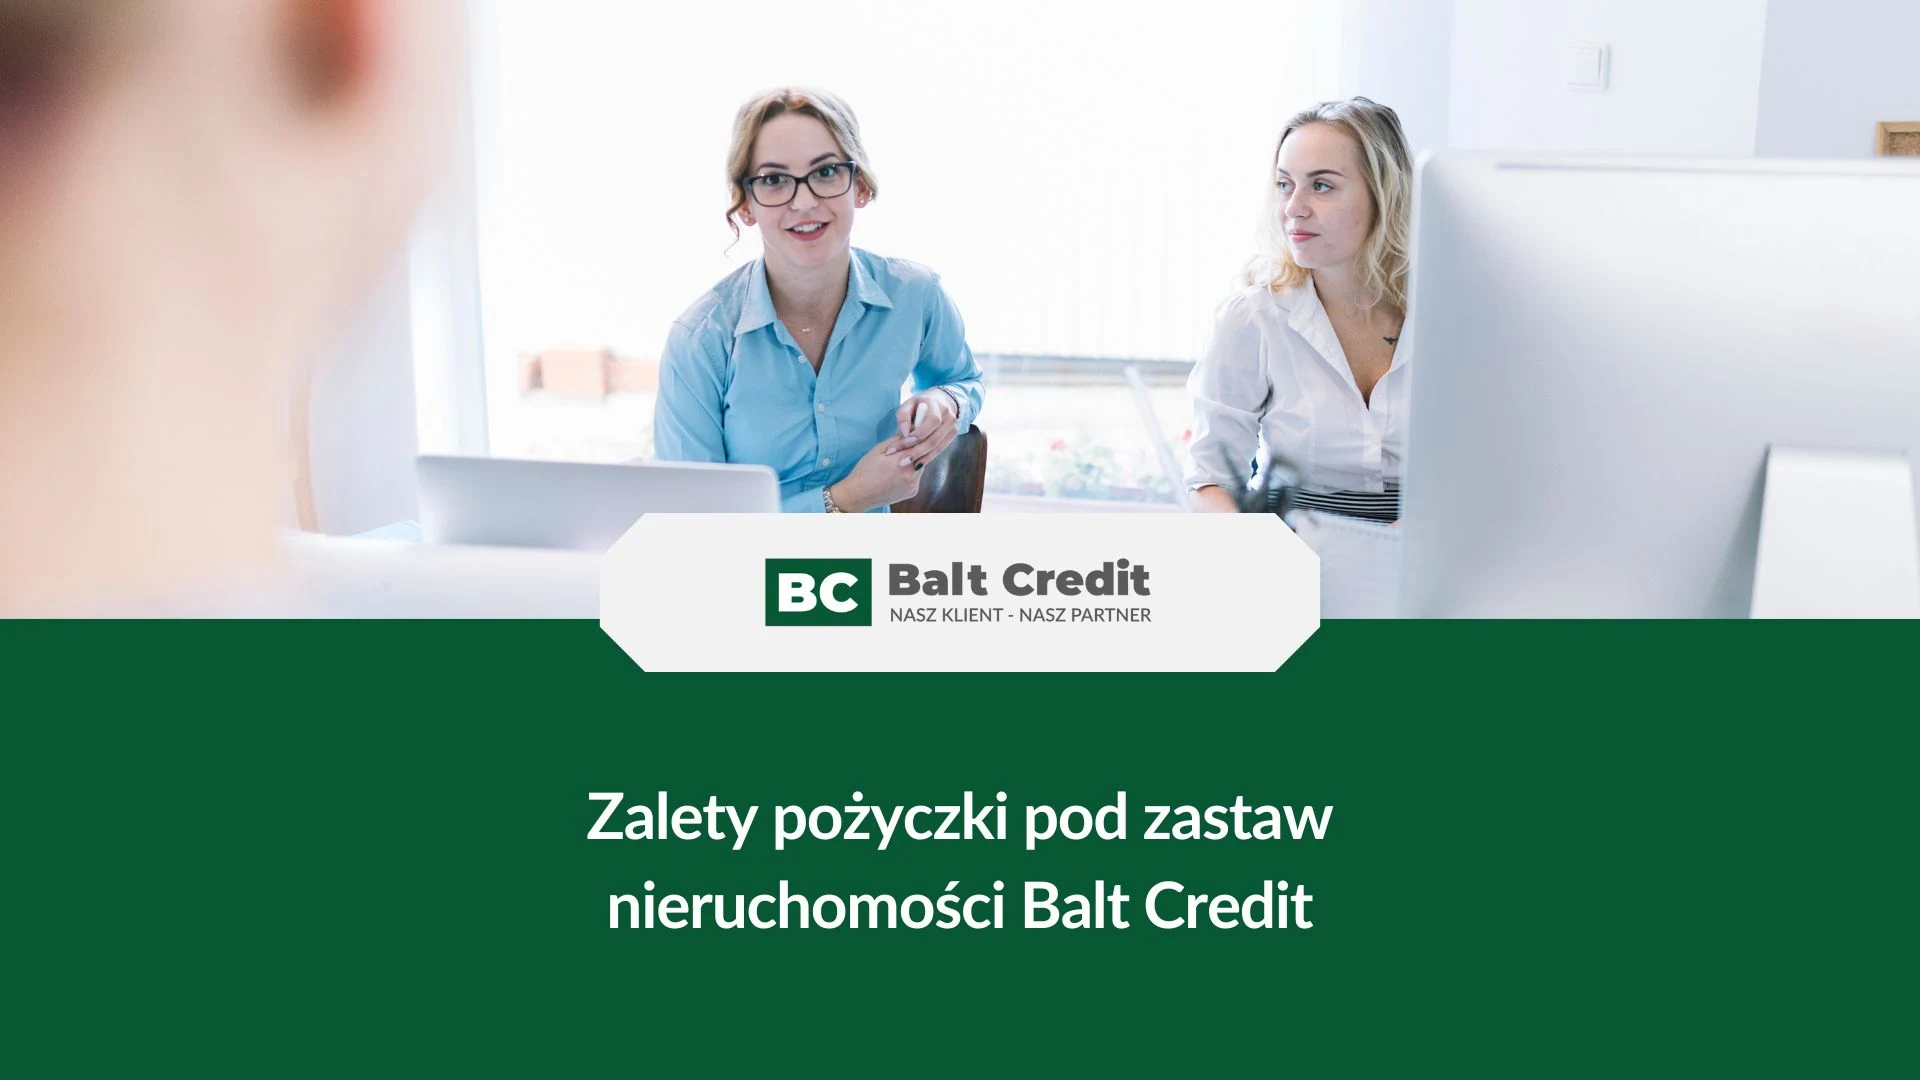 Zalety pożyczki pod zastaw nieruchomości - zalety pożyczki Balt Credit